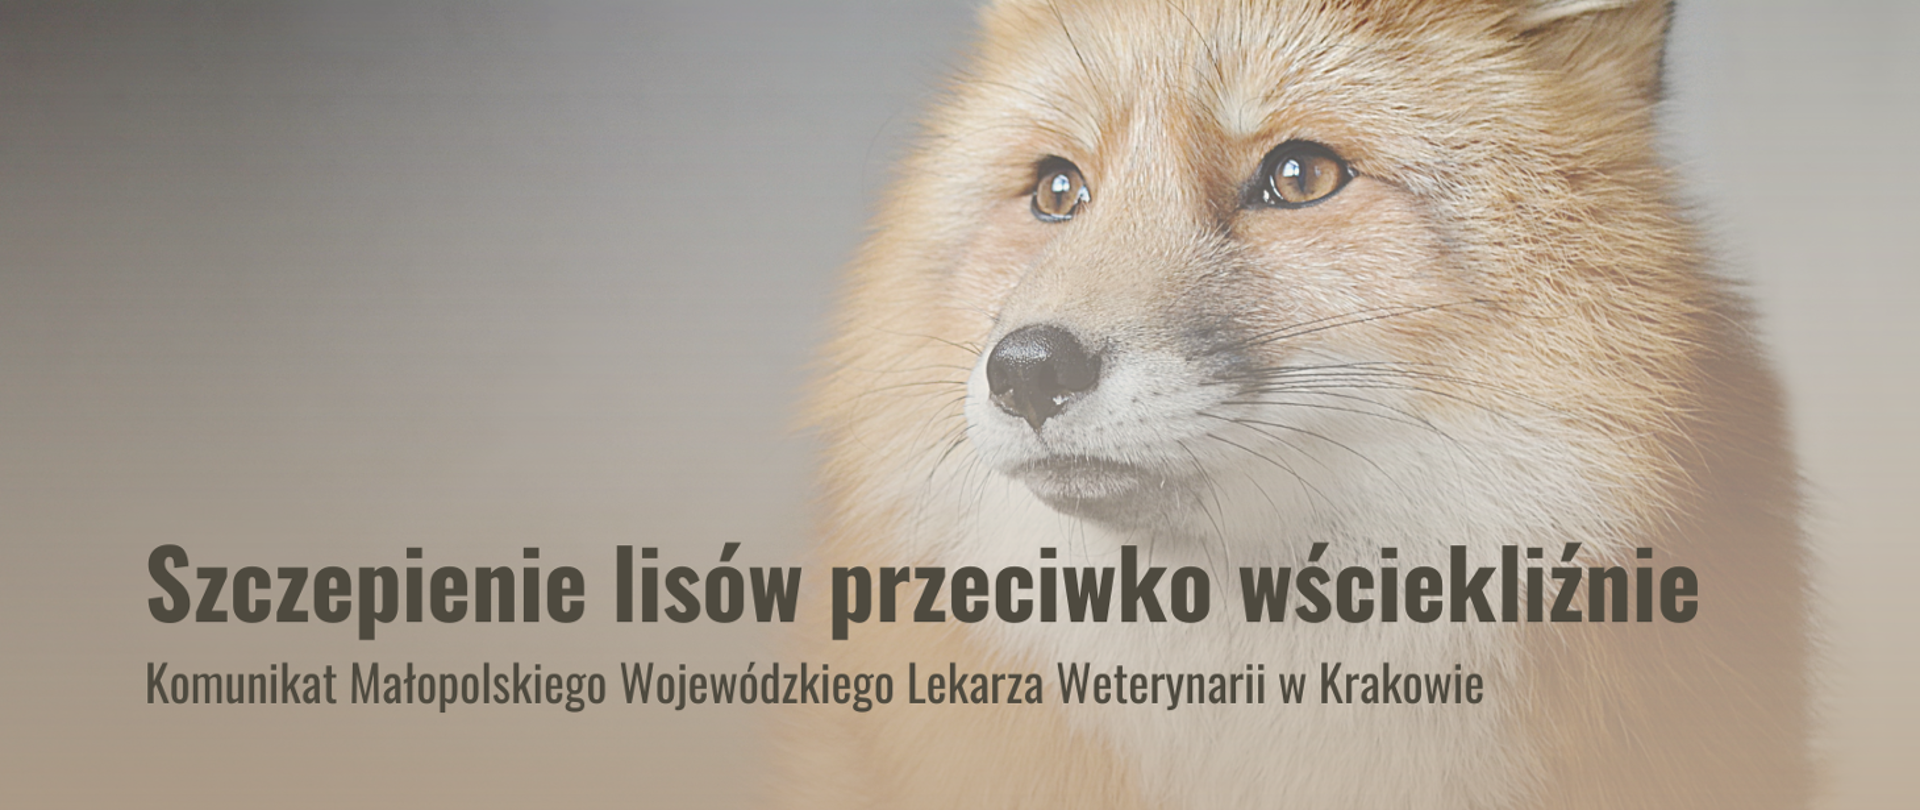 Szczepienie lisów wolno żyjących przeciwko wściekliźnie - komunikat Małopolskiego Wojewódzkiego Lekarza Weterynarii w Krakowie - zdjęcie lisa patrzącego w lewo